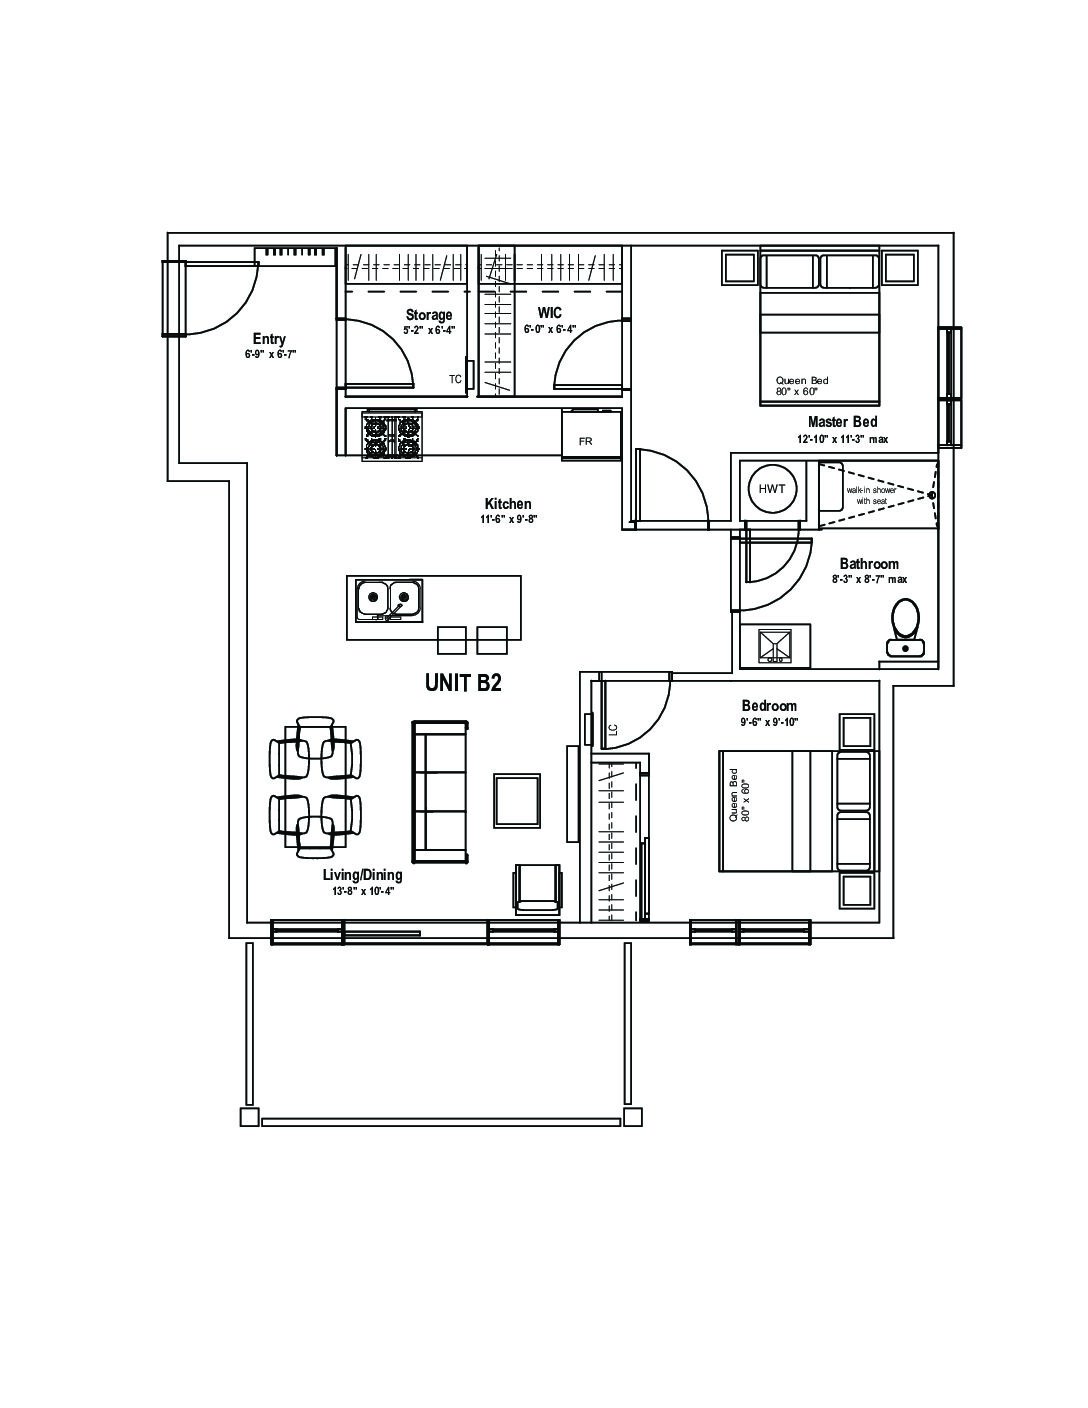 View or Print PDF of 1 Bedroom plus den floor plan in new tab